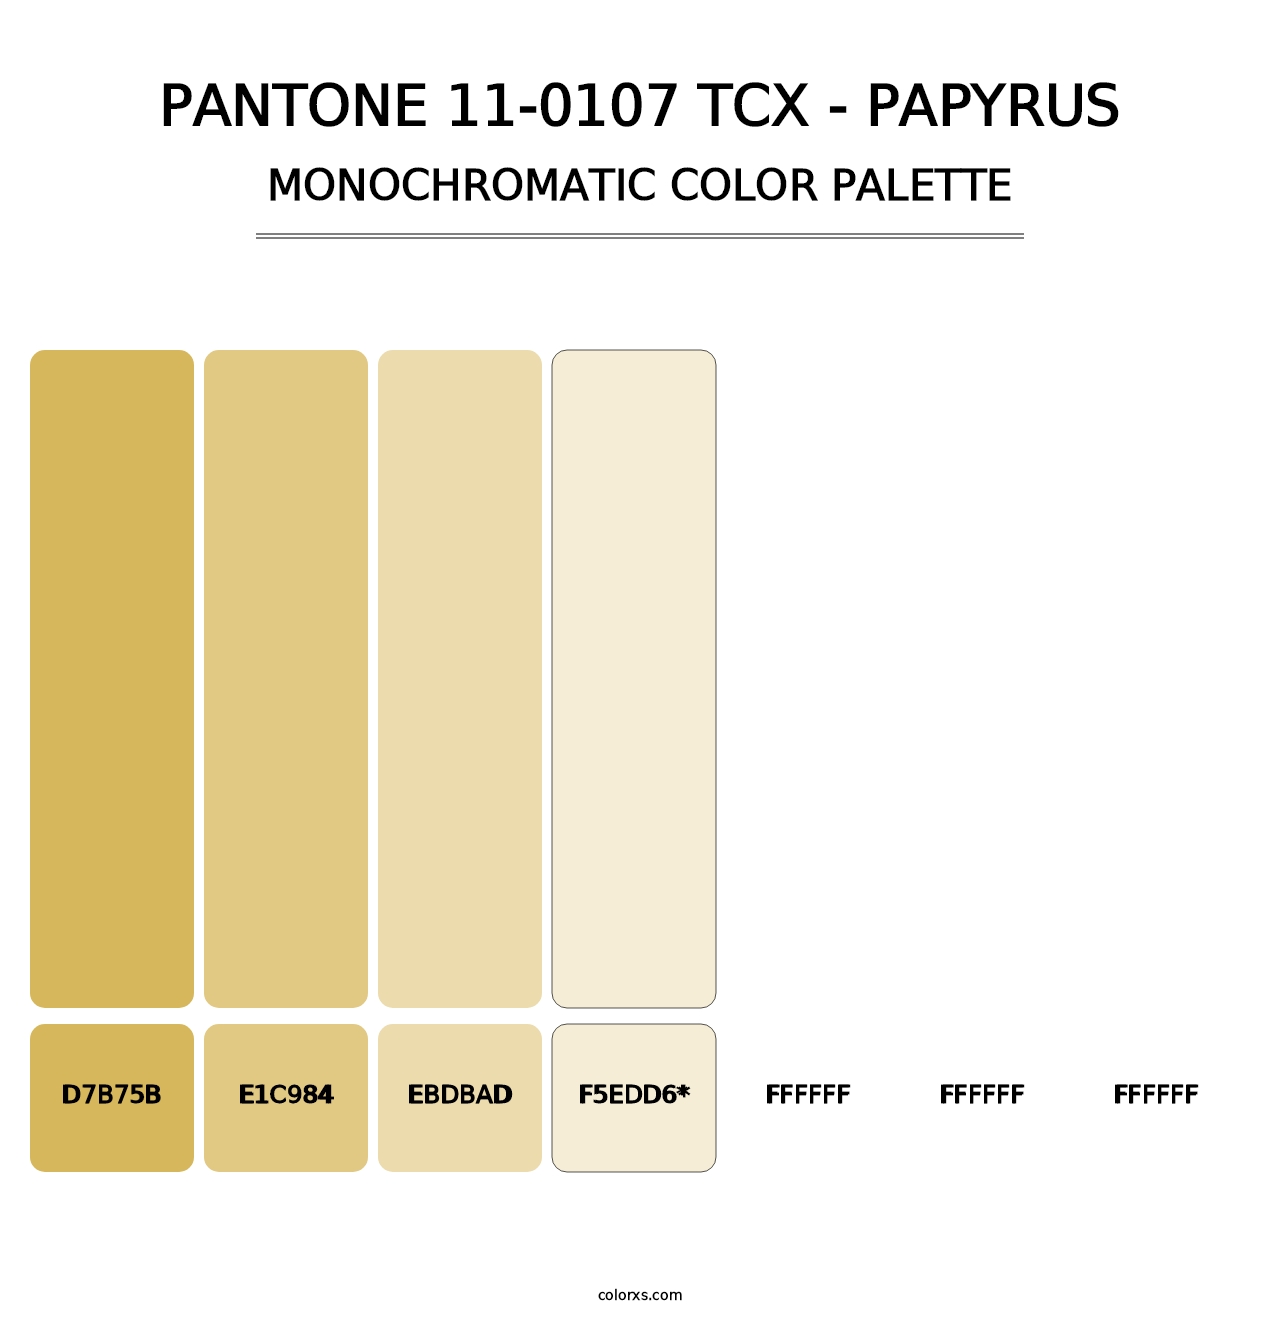 PANTONE 11-0107 TCX - Papyrus - Monochromatic Color Palette